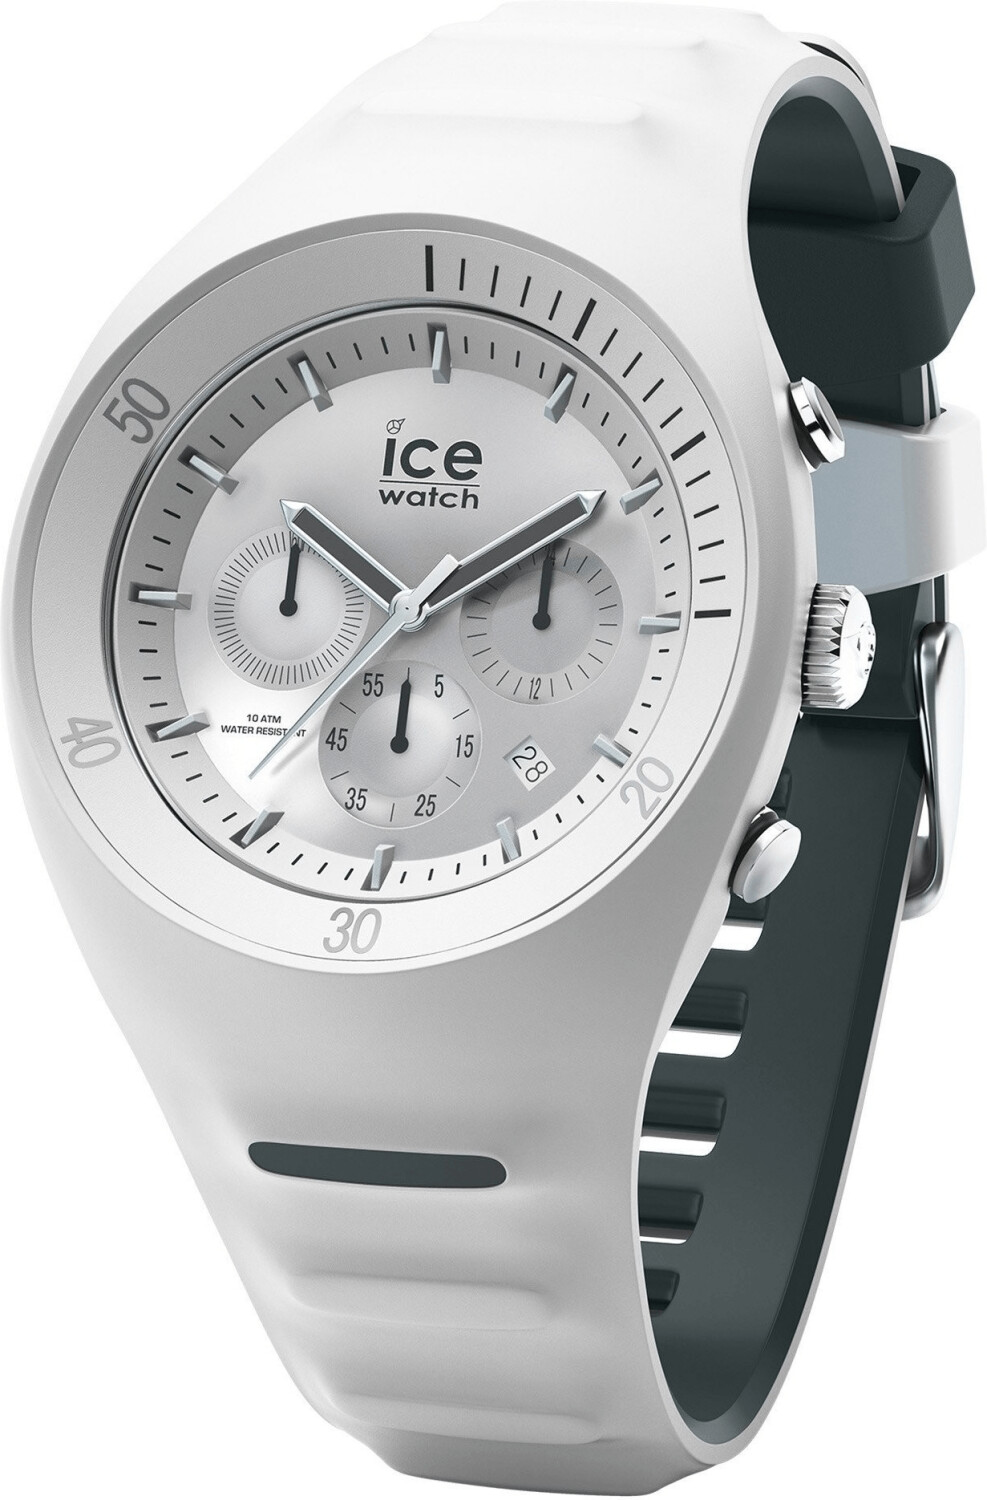 Ice Watch Pierre Leclercq ab € 45,99 | Preisvergleich bei